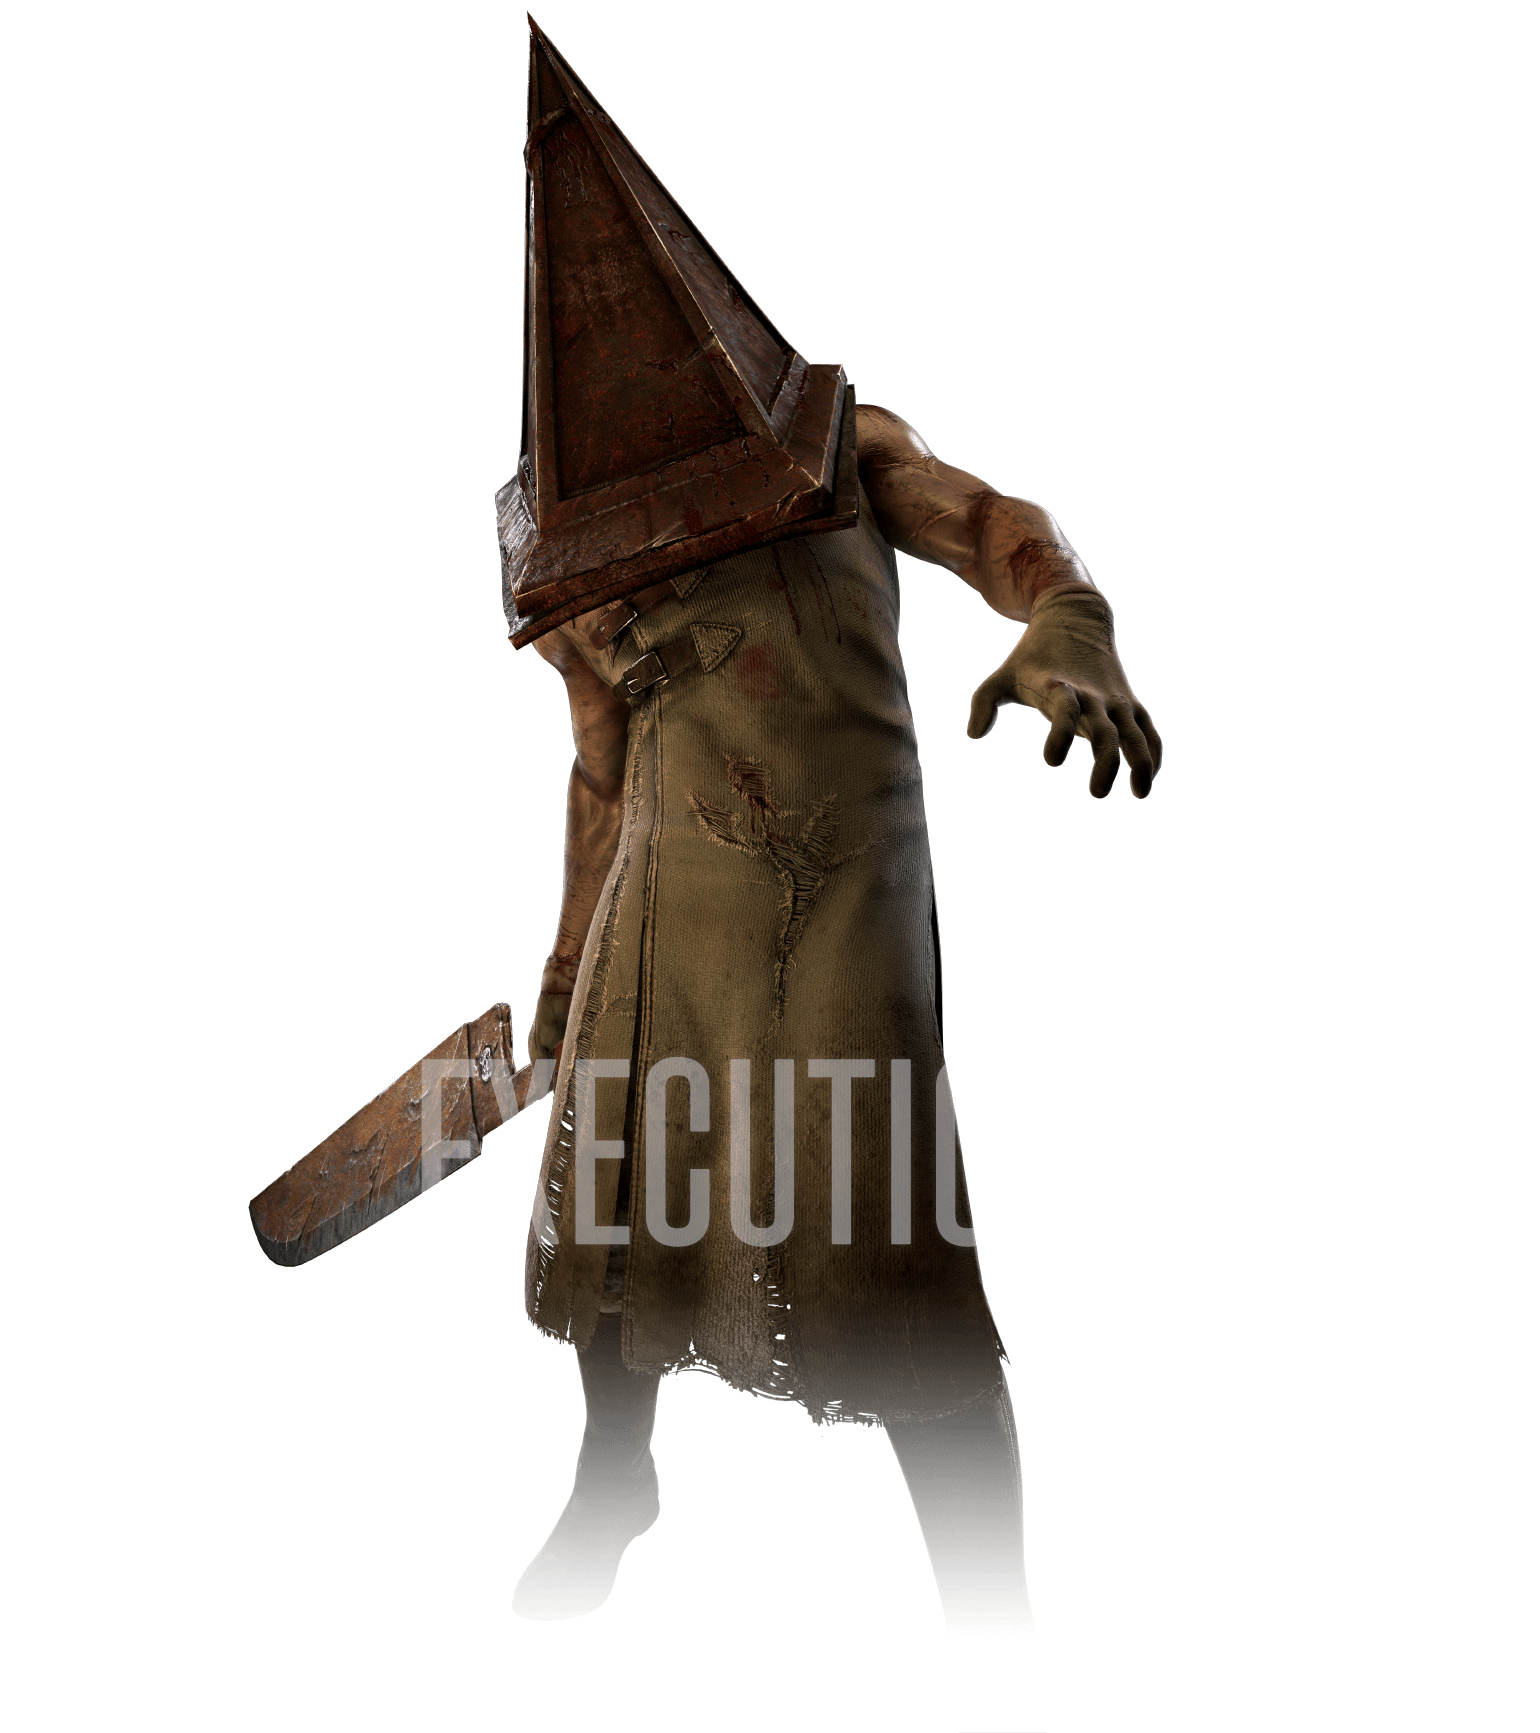 The Executioner // Pyramid Head (DBD) - playlist by CoiledDragon